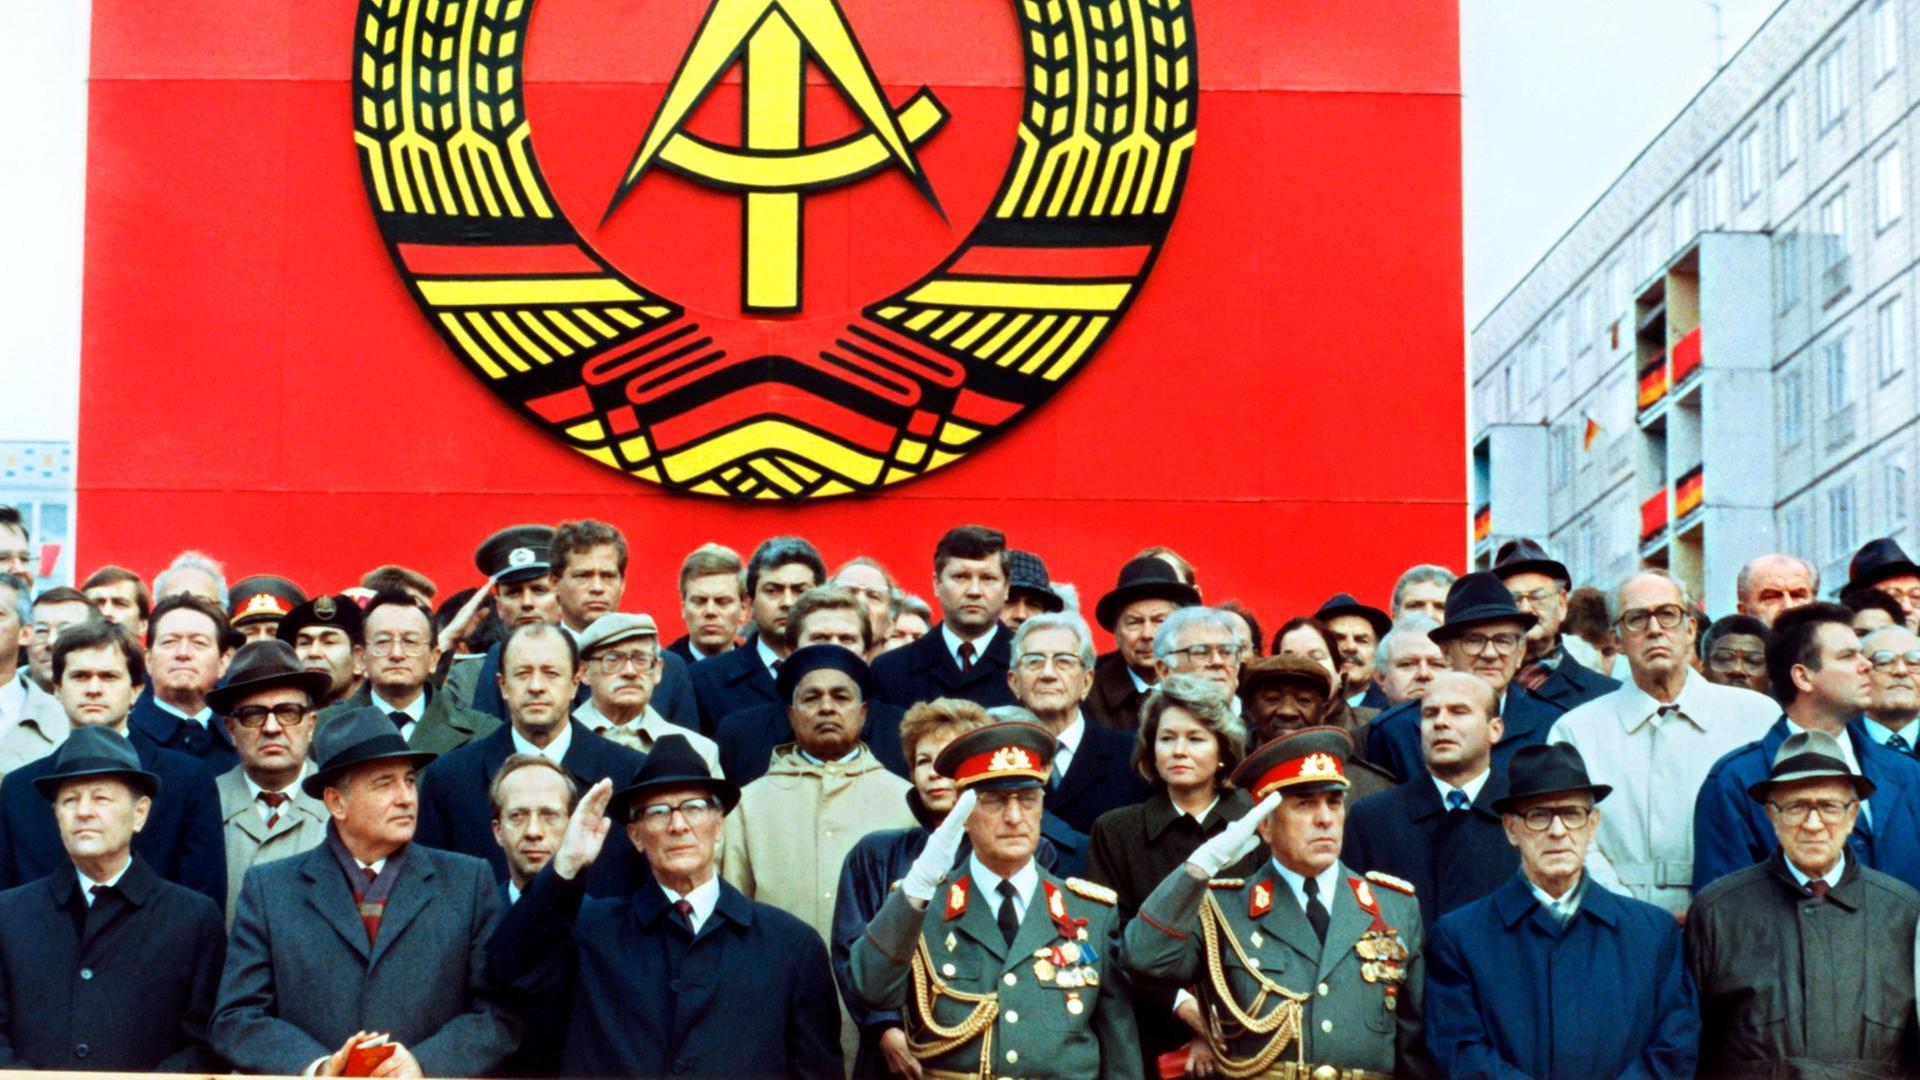 Die Ehrentribüne auf der Karl-Marx-Allee während der Militärparade am 7. Oktober 1989 in Ost-Berlin mit dem sowjetischen Staats- und Parteichef Michail Gorbatschow (2.v.l.), dem DDR-Staatsratsvorsitzenden und SED-Generalsekretär Erich Honecker (3.v.l.), Raissa Gorbatschowa (hinter Honecker), die Gattin des sowjetischen Präsidenten und Willi Stoph (3.v.r.), Ministerpräsident der DDR.